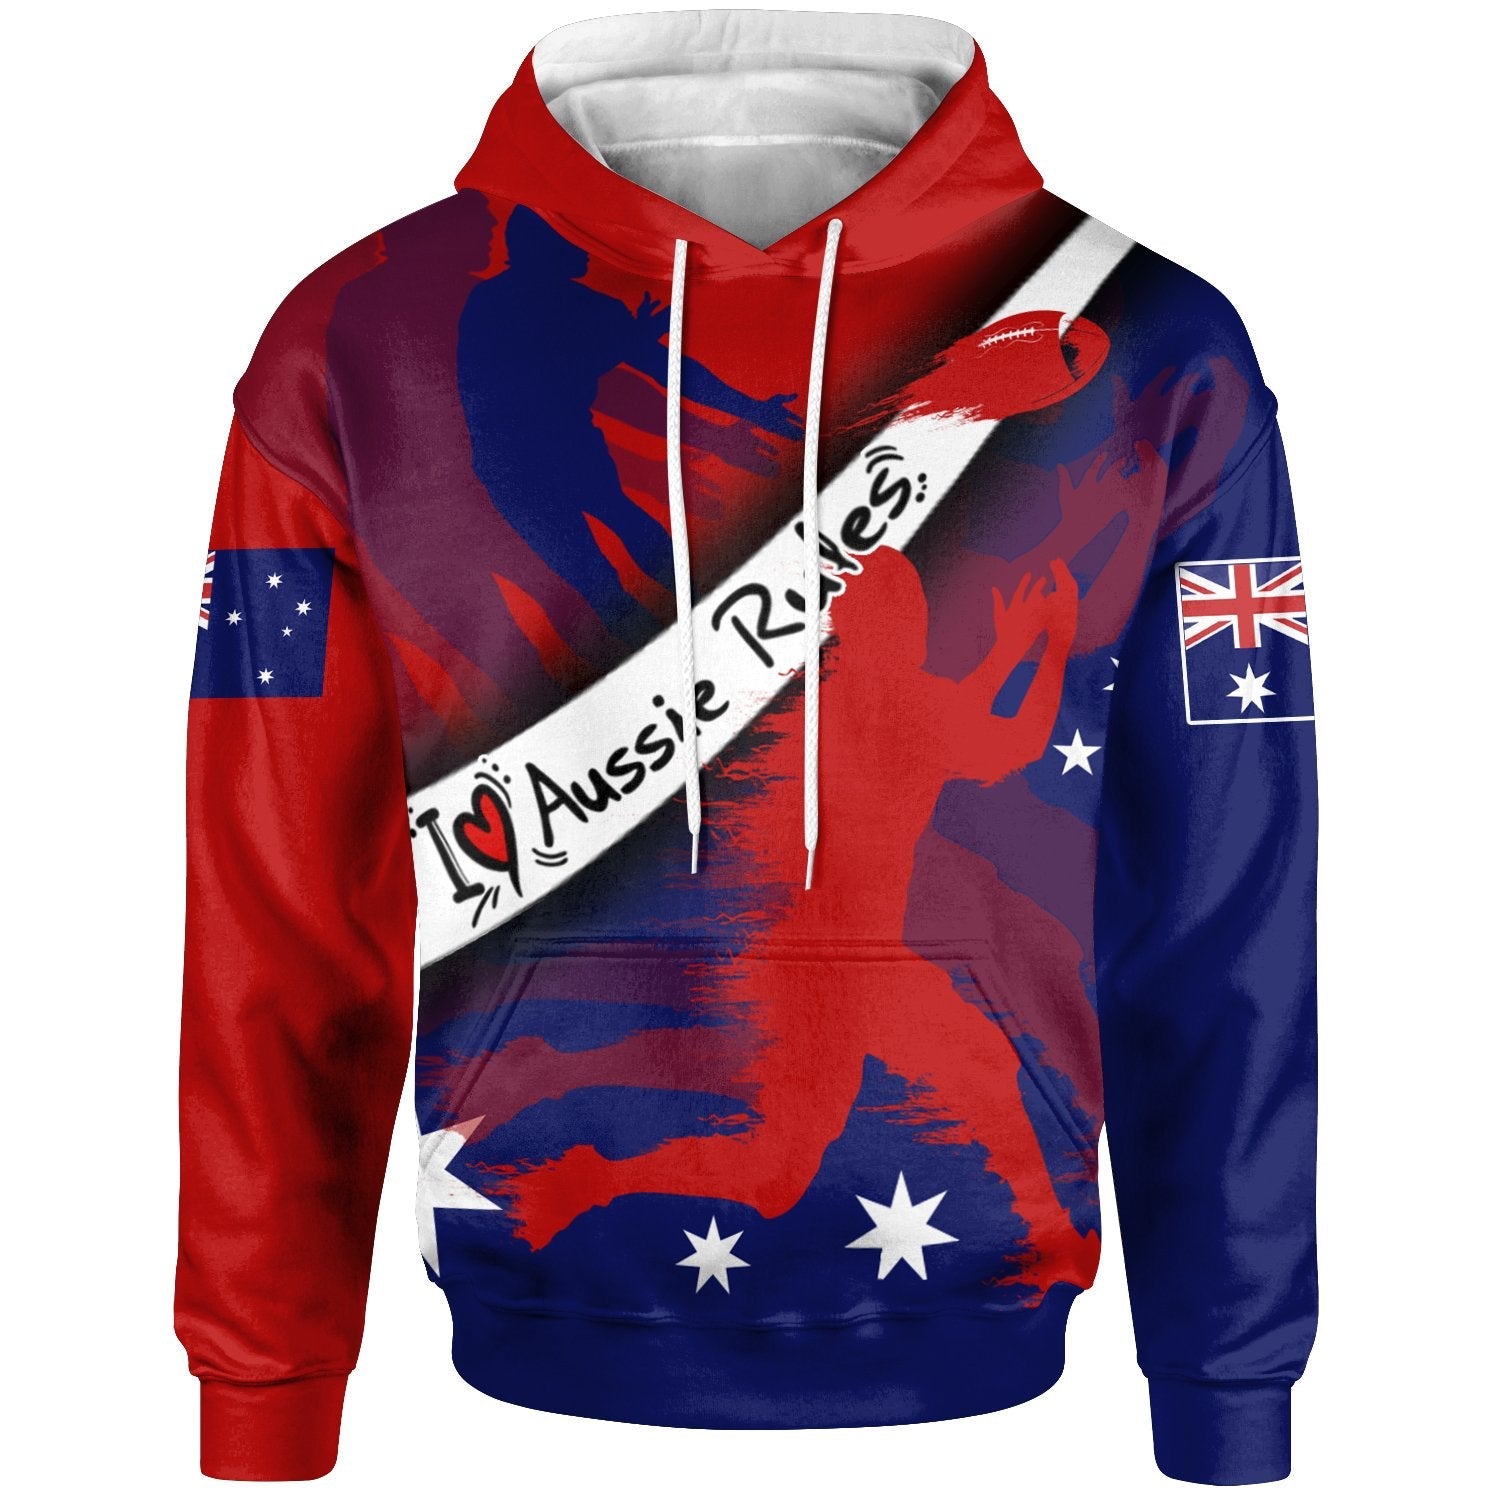 hoodie-australian-rules-football